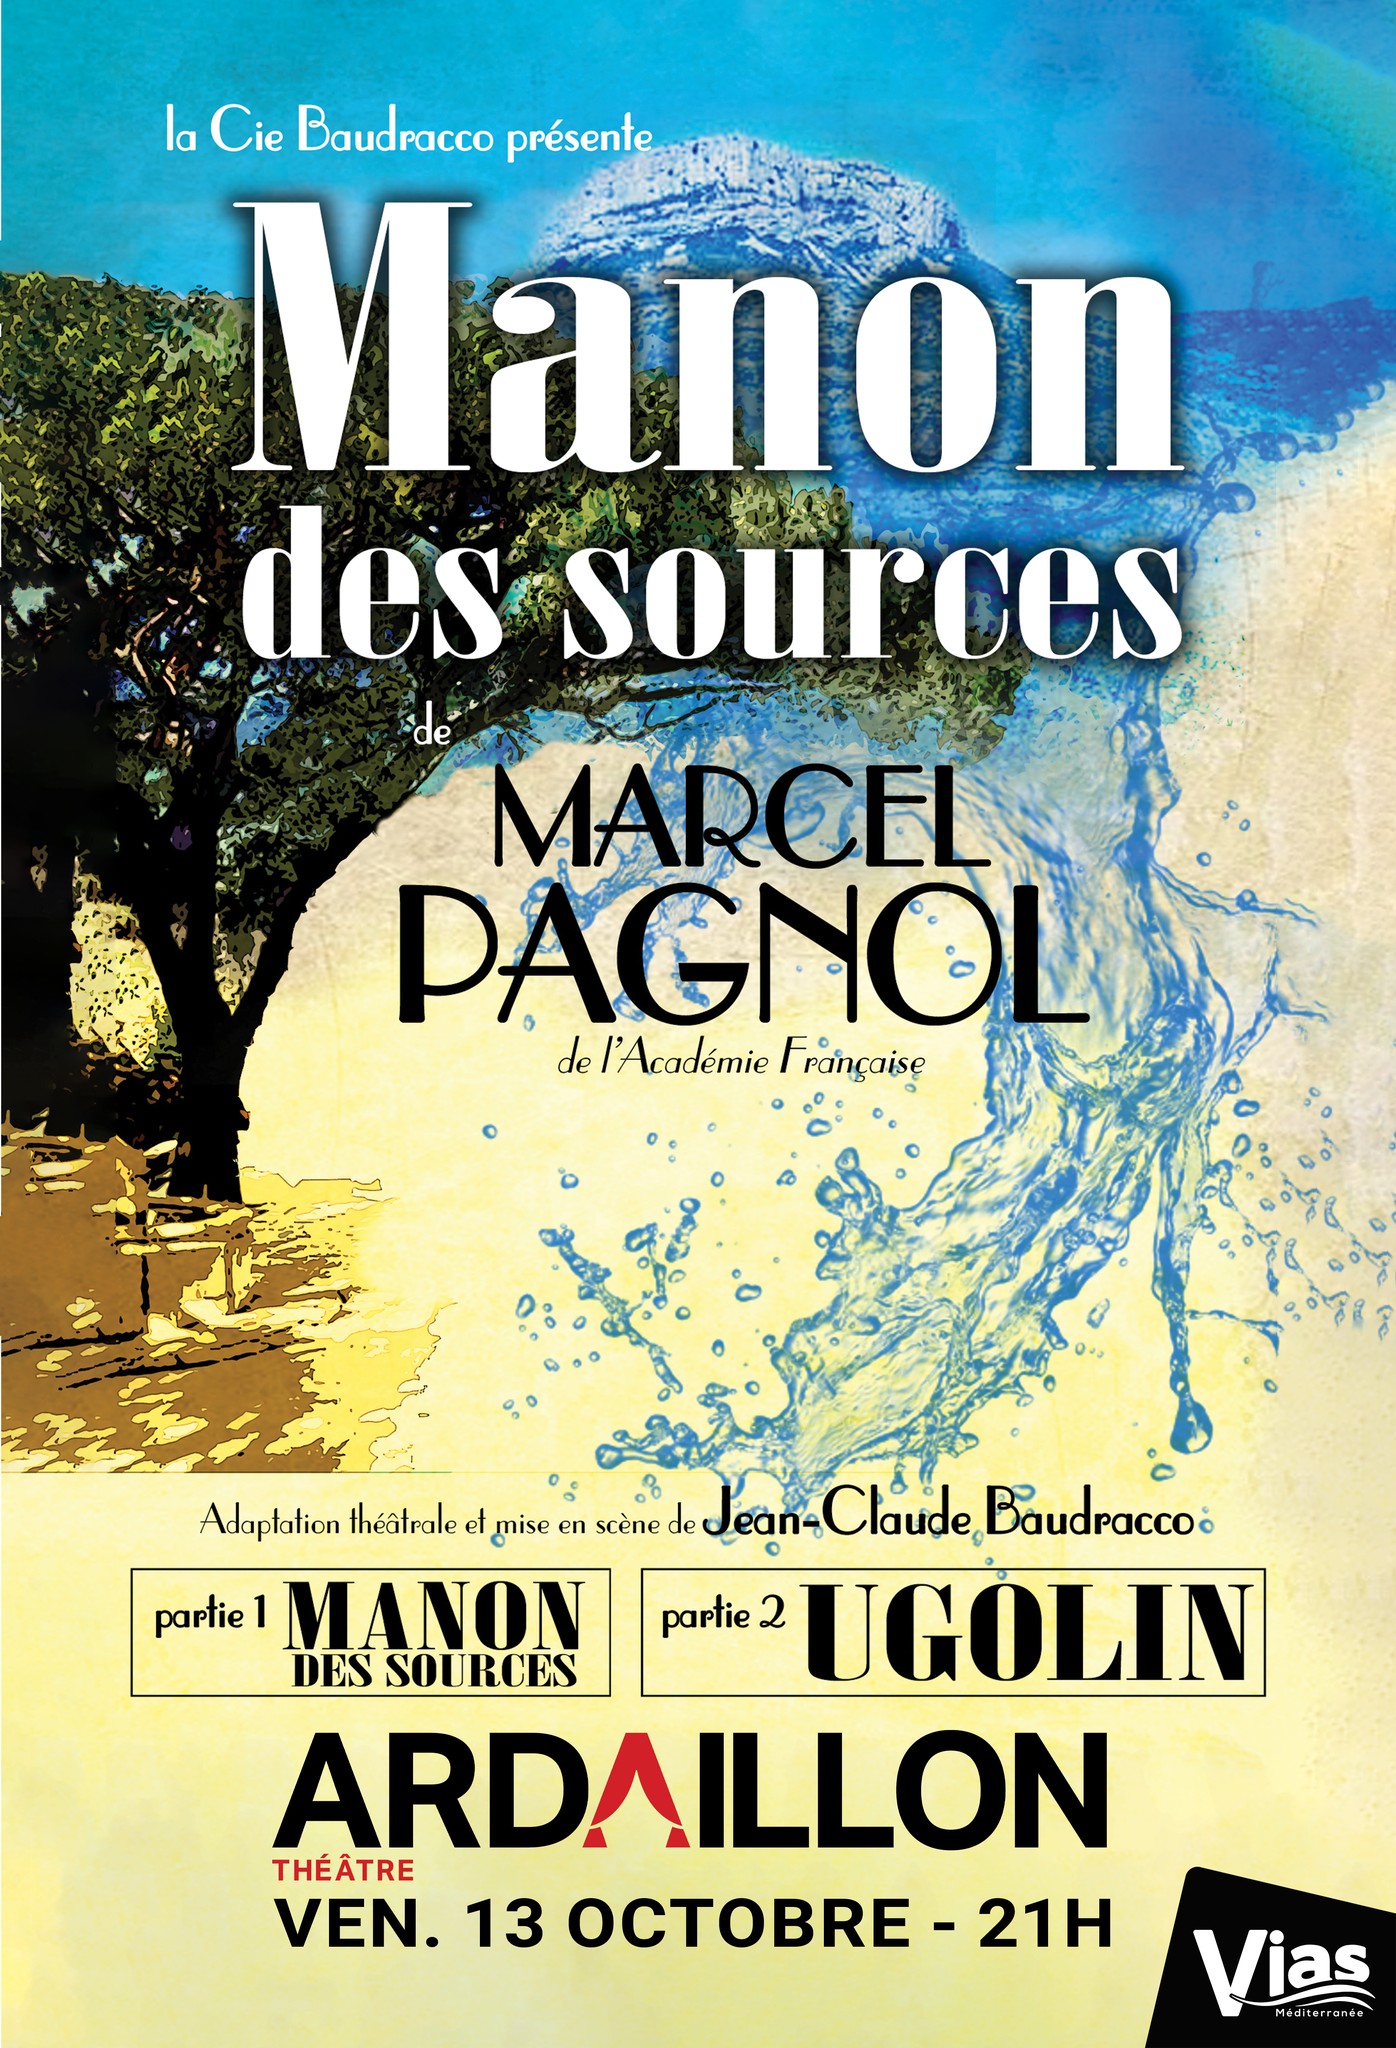 Vias - Manon des Sources au Théâtre de l'Ardaillon le 13 octobre !